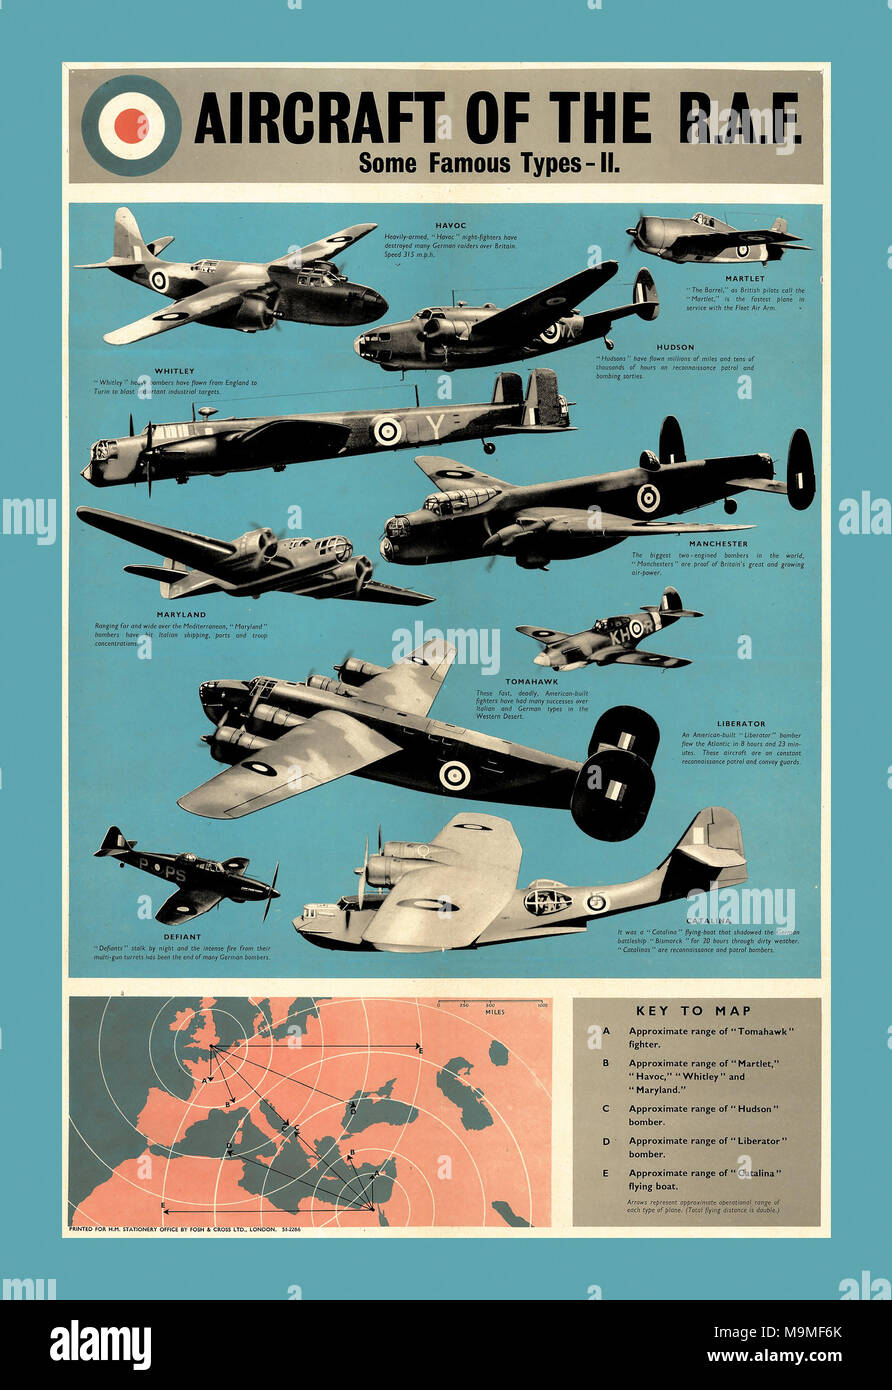 Cartel propagandístico británico apoyando a la Real Fuerza Aérea de 1942 aeronaves de la R.A.F. Durante WW2 y la Batalla de Gran Bretaña Foto de stock